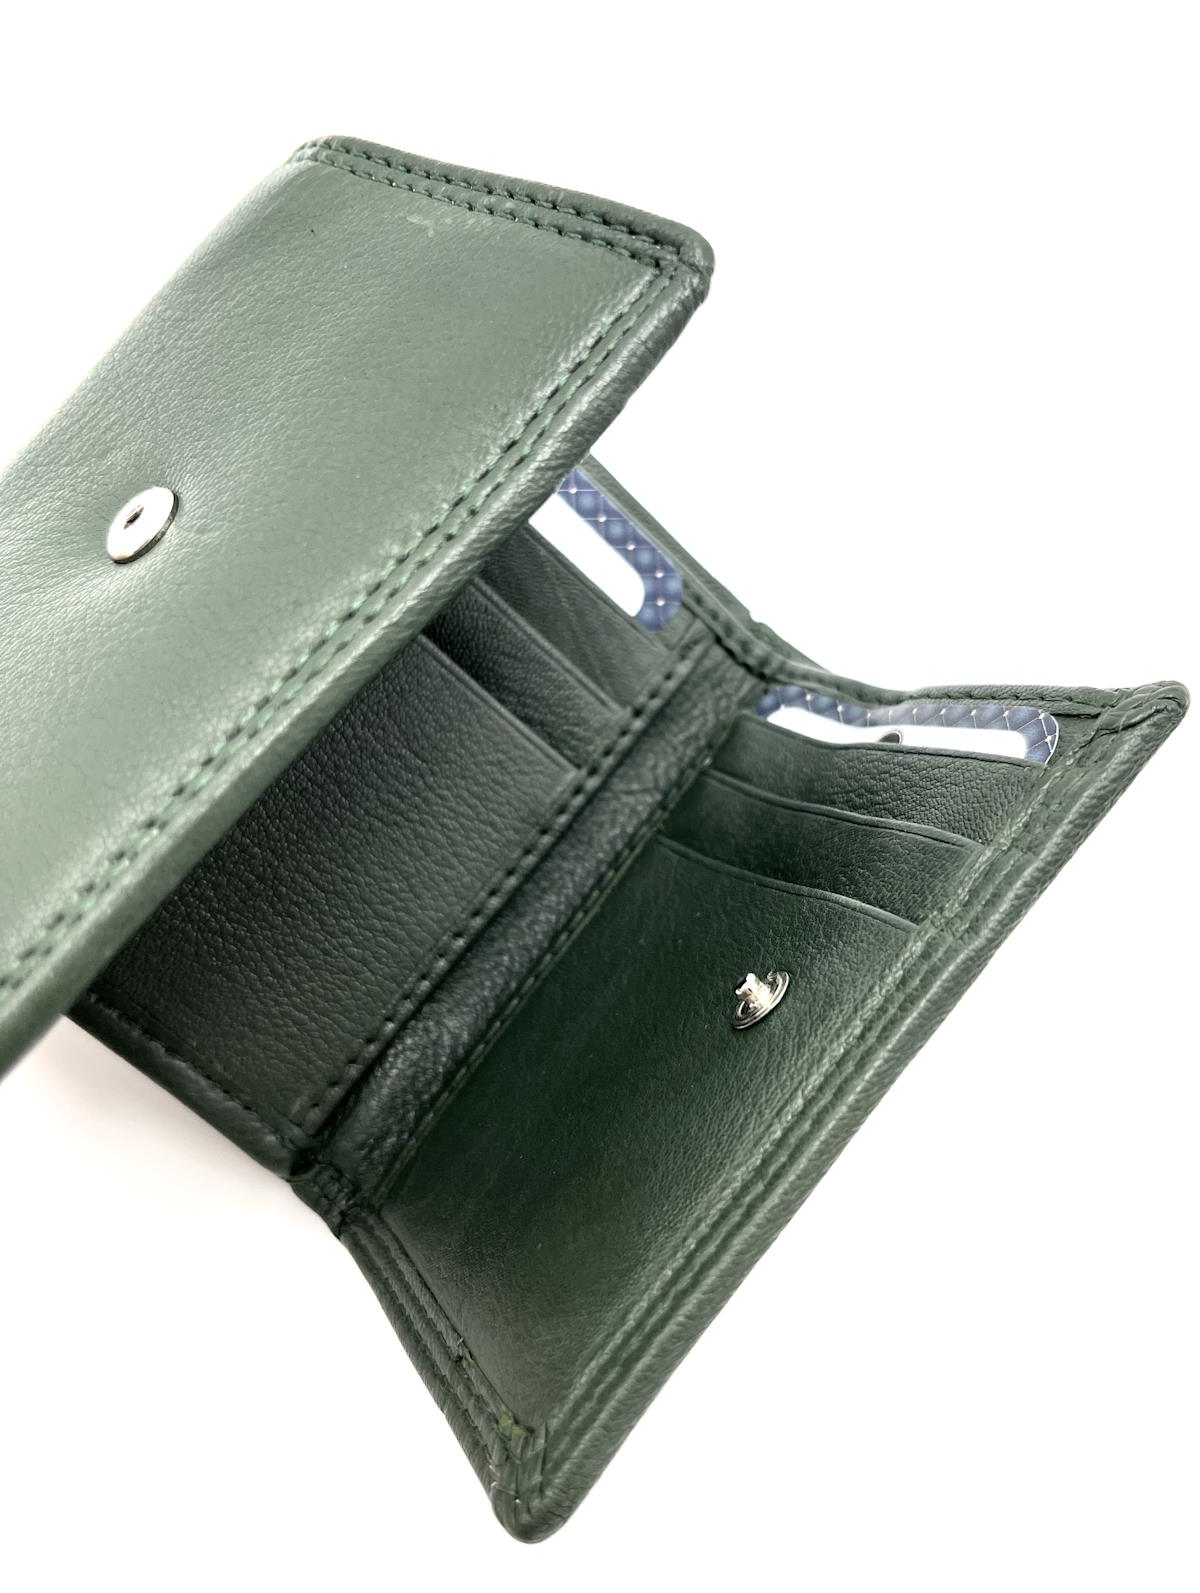 Genuine leather wallet, Brand GMV, art. GMV80-53